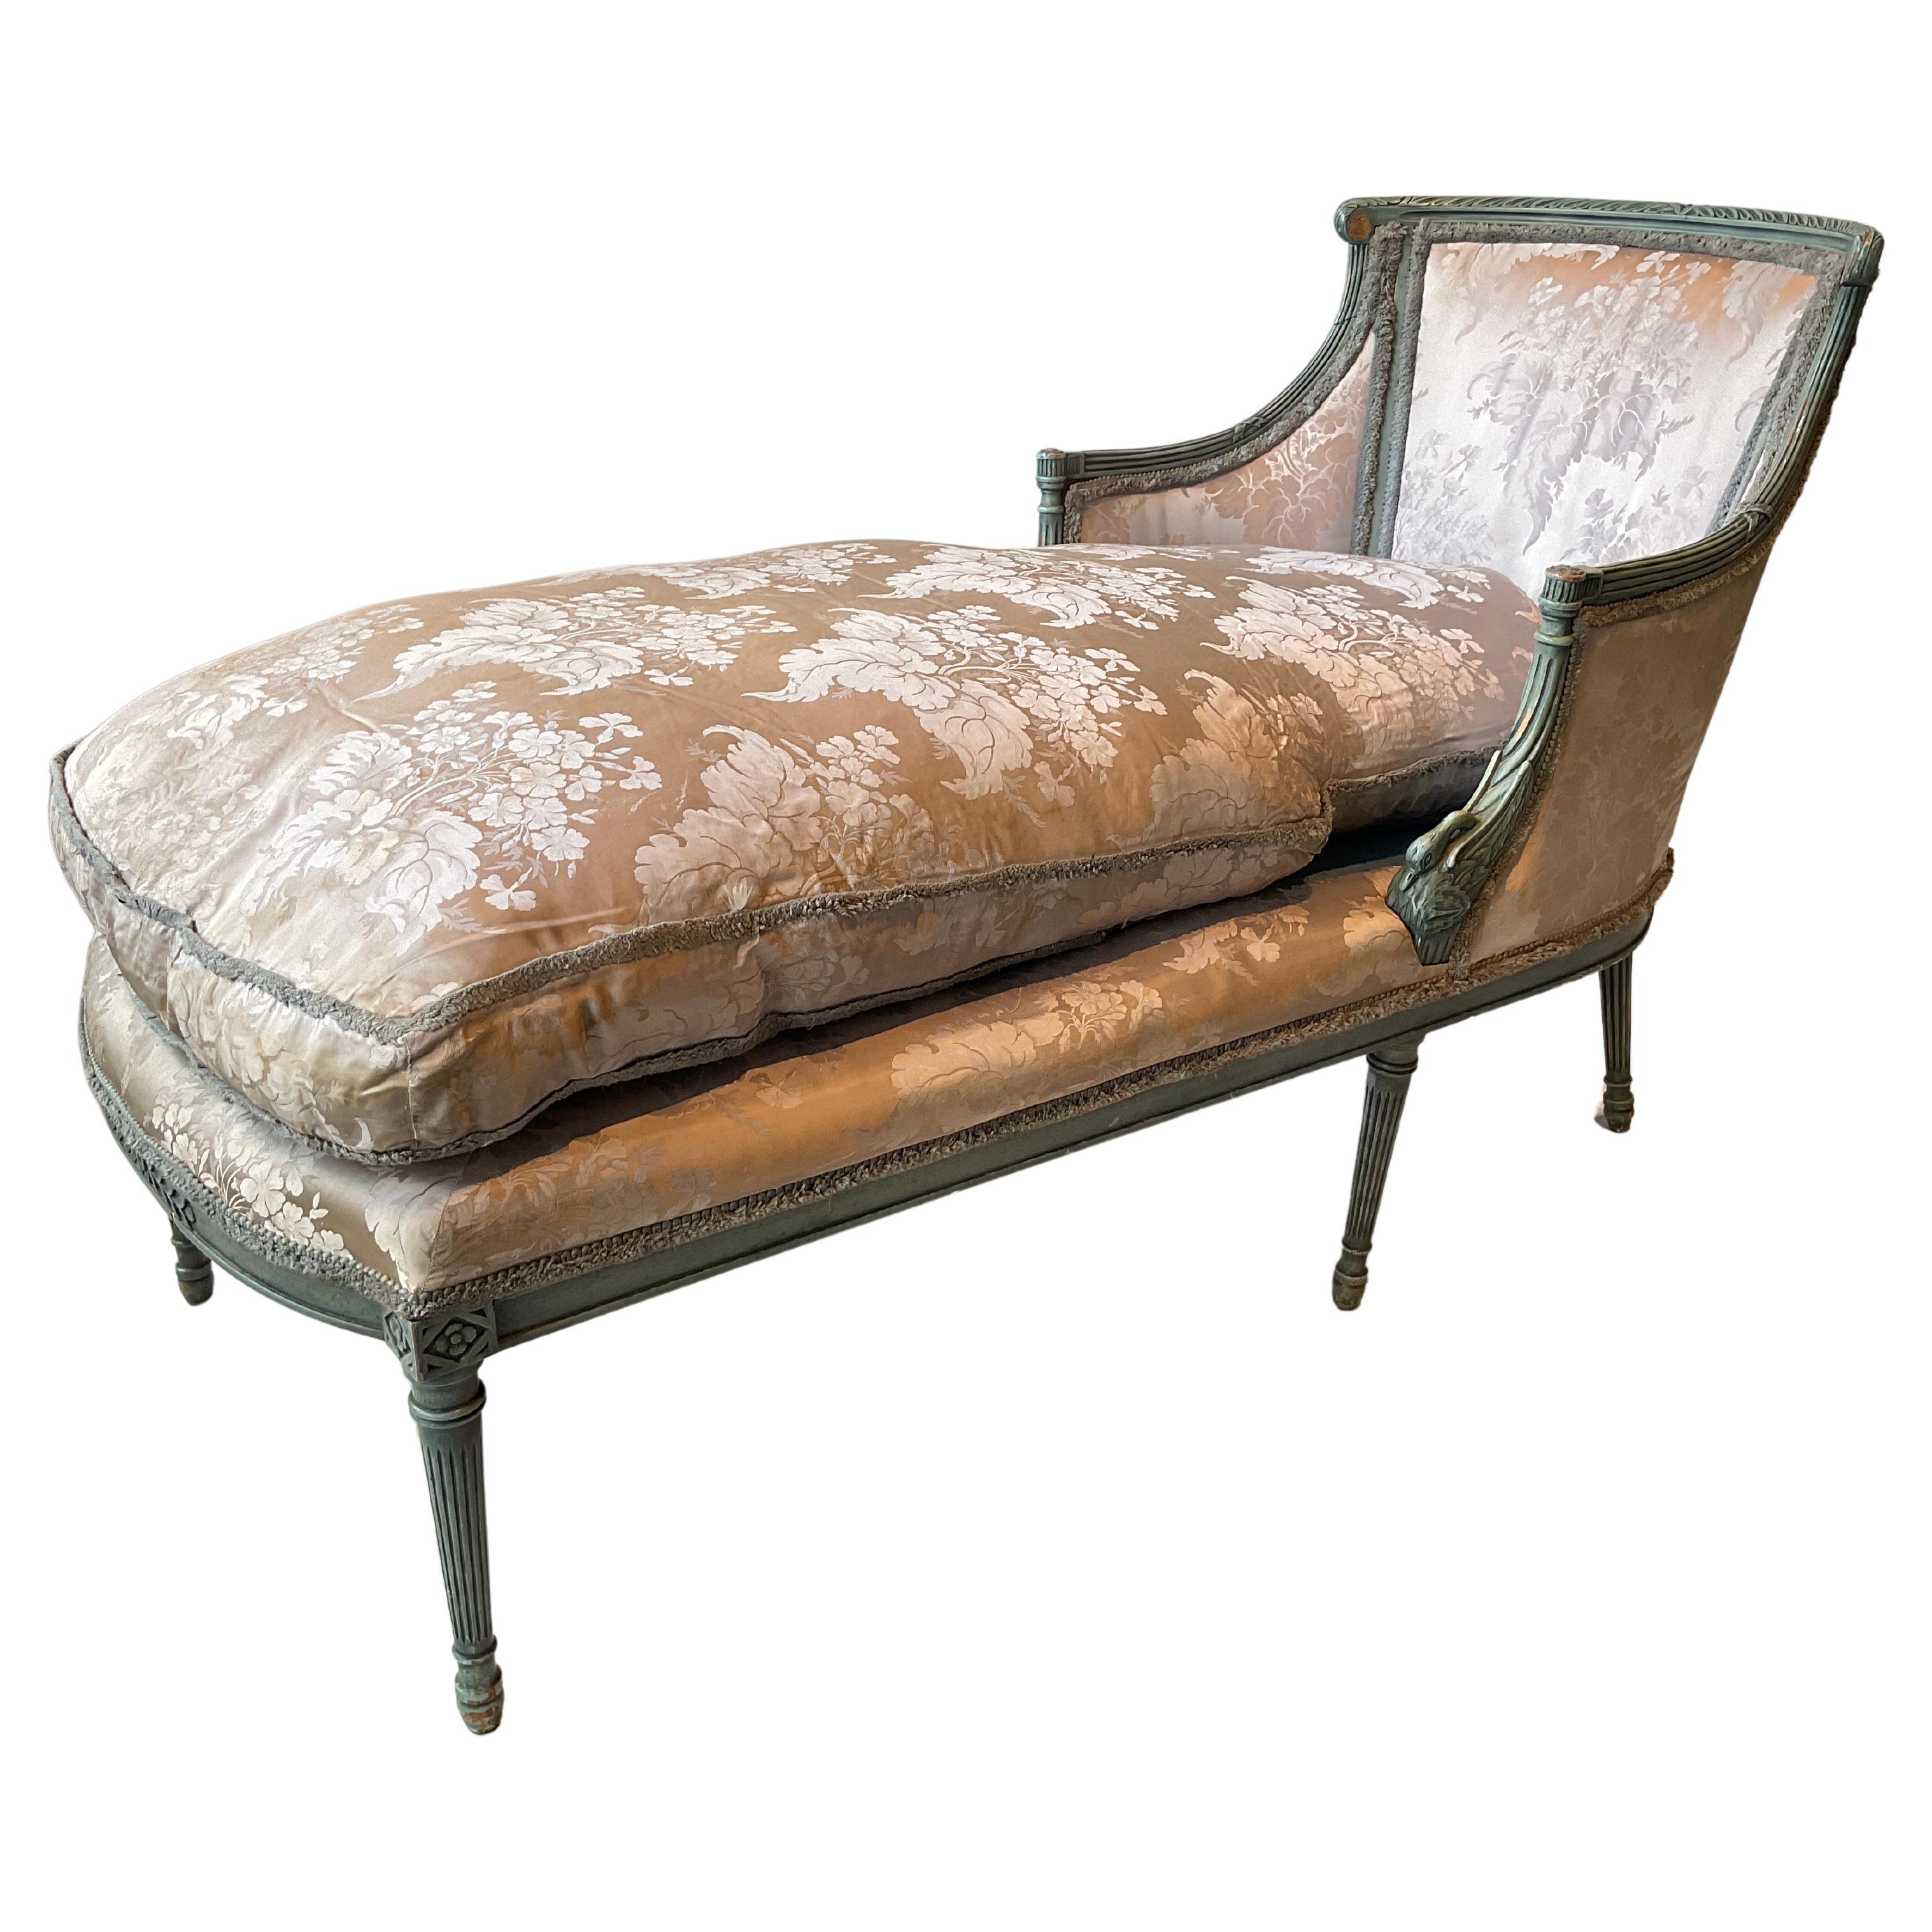 1940er Jahre Französisch geschnitzt Holz Schwan Chaise mit Daunenkissen. Muss neu gepolstert werden. Es fehlen 2 Röschen an der Spitze, wie auf dem Bild zu sehen. Die mittleren 2 Beine lehnen sich nach innen (so wurde die Liege hergestellt).